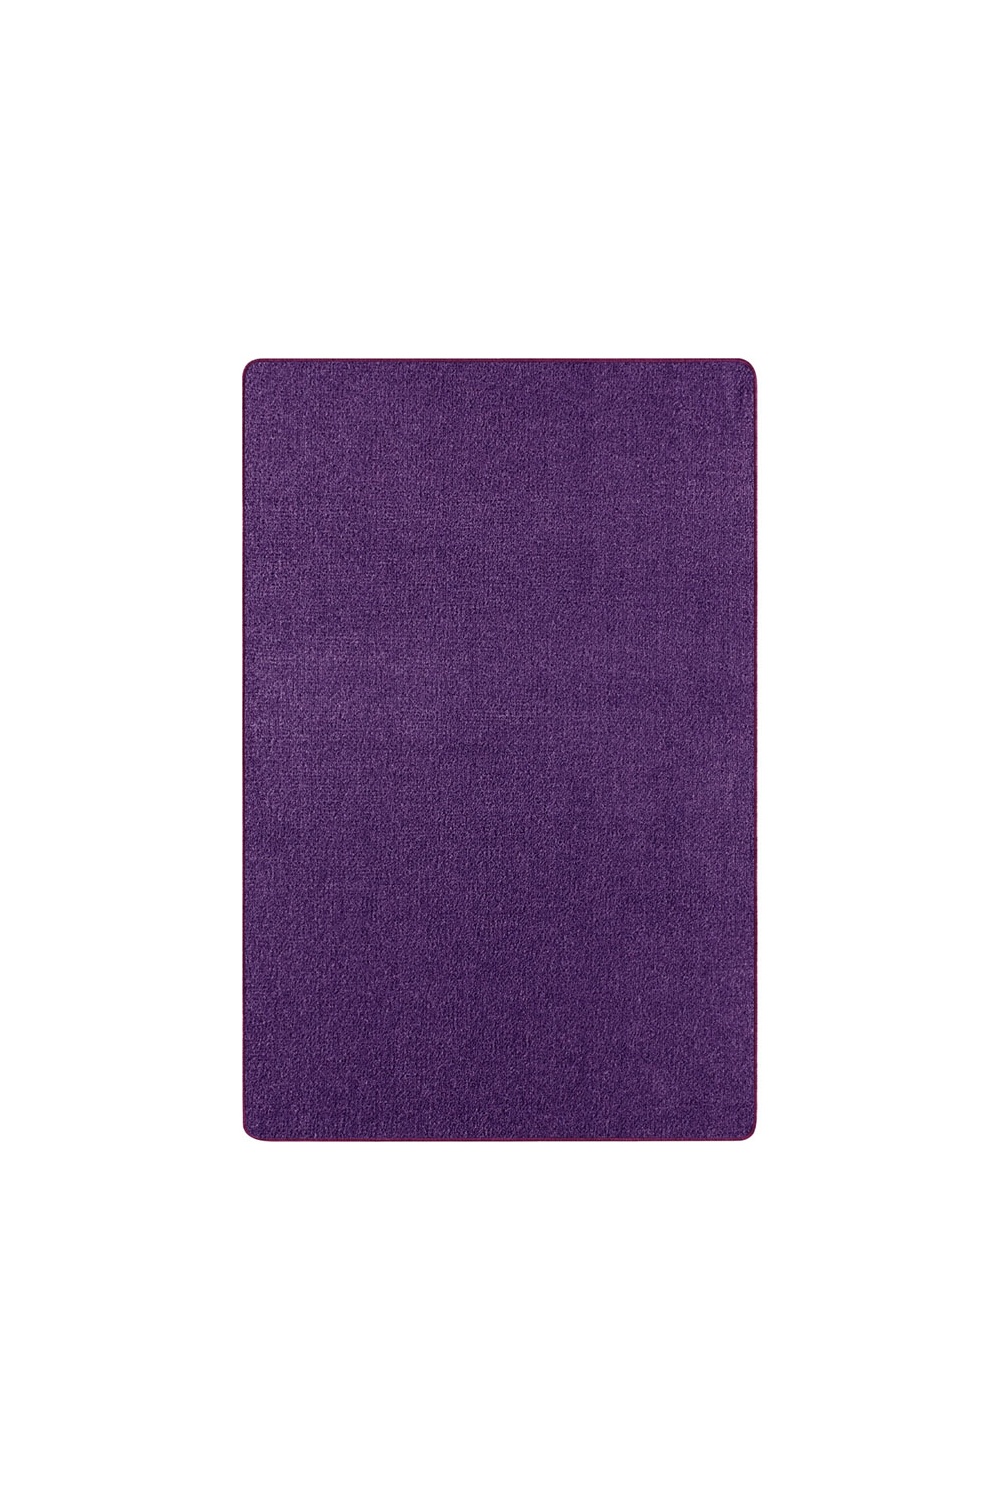 Dywan Fioletowy Jednokolorowy Nasty 101150 Purple